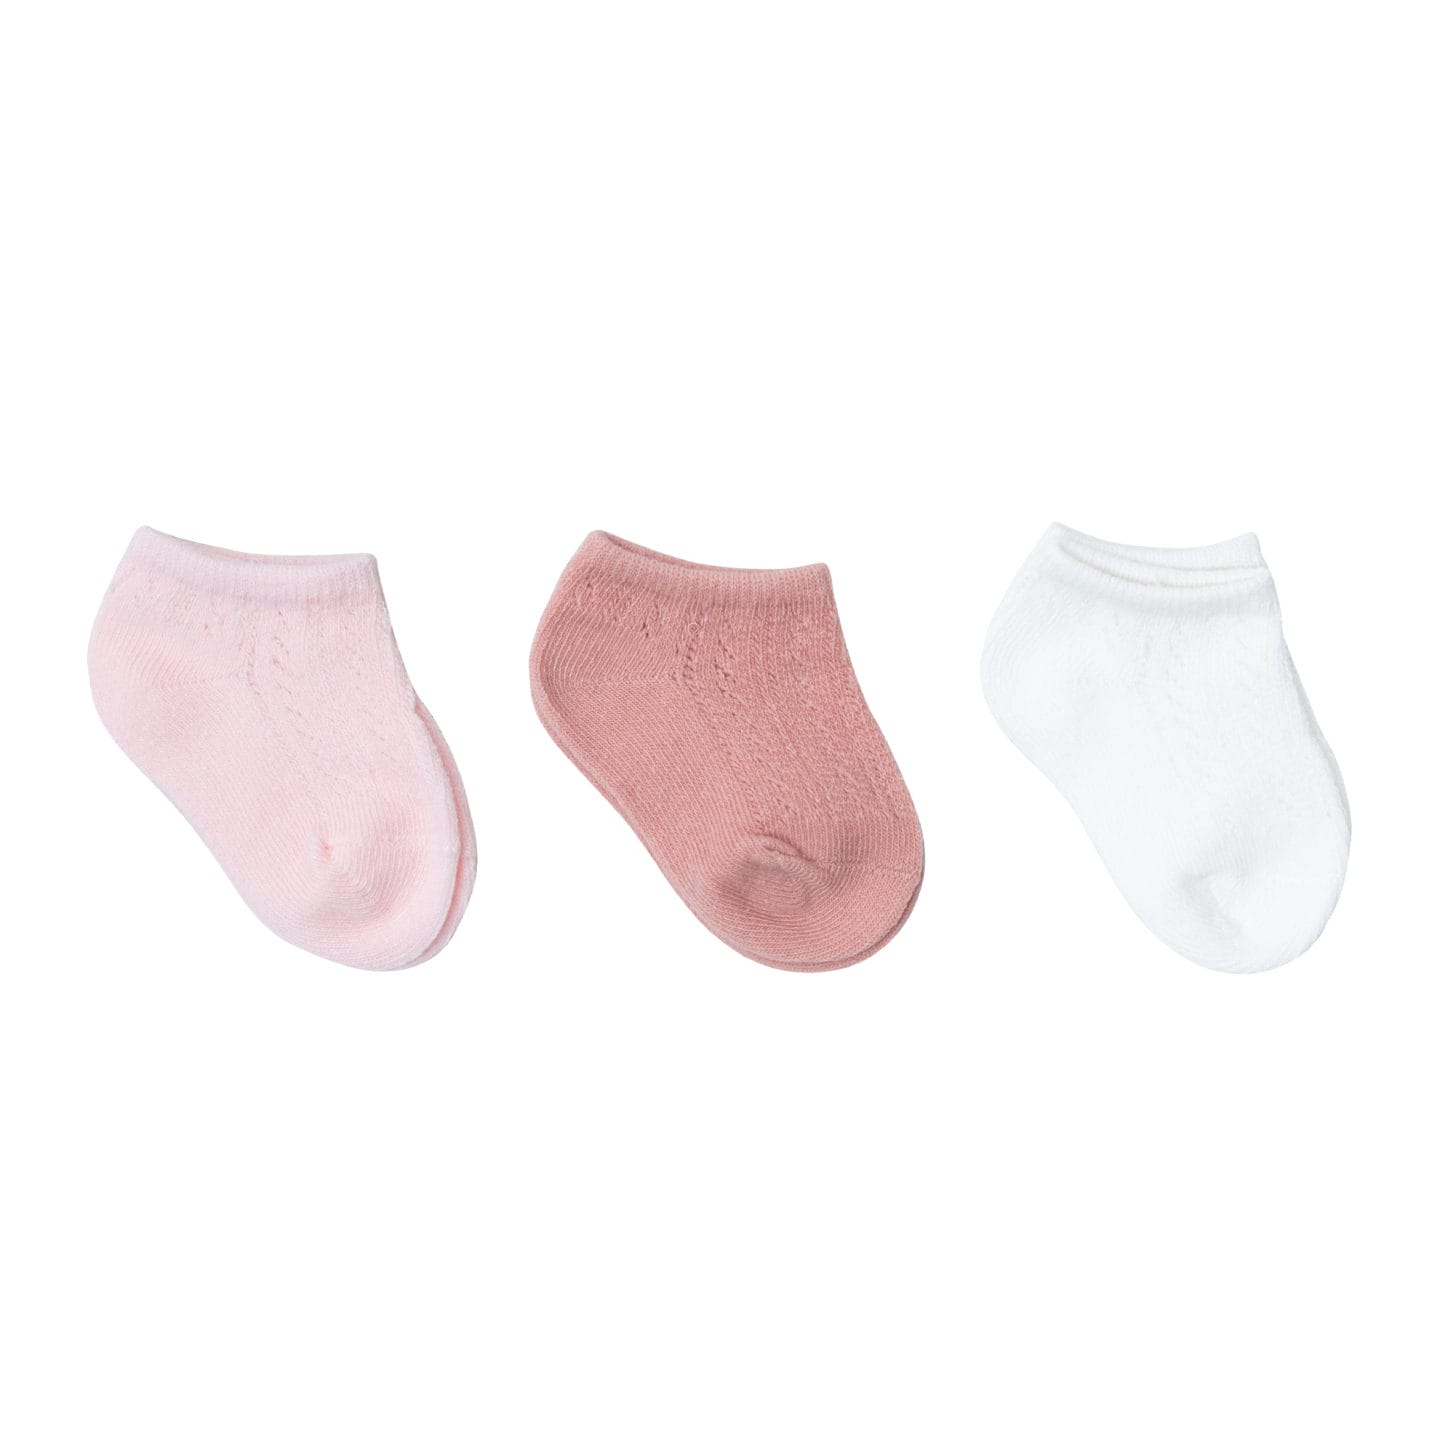 Babylove Korean Pastel Newborn Socks 3 Pairs (6-12 months) - Babylove